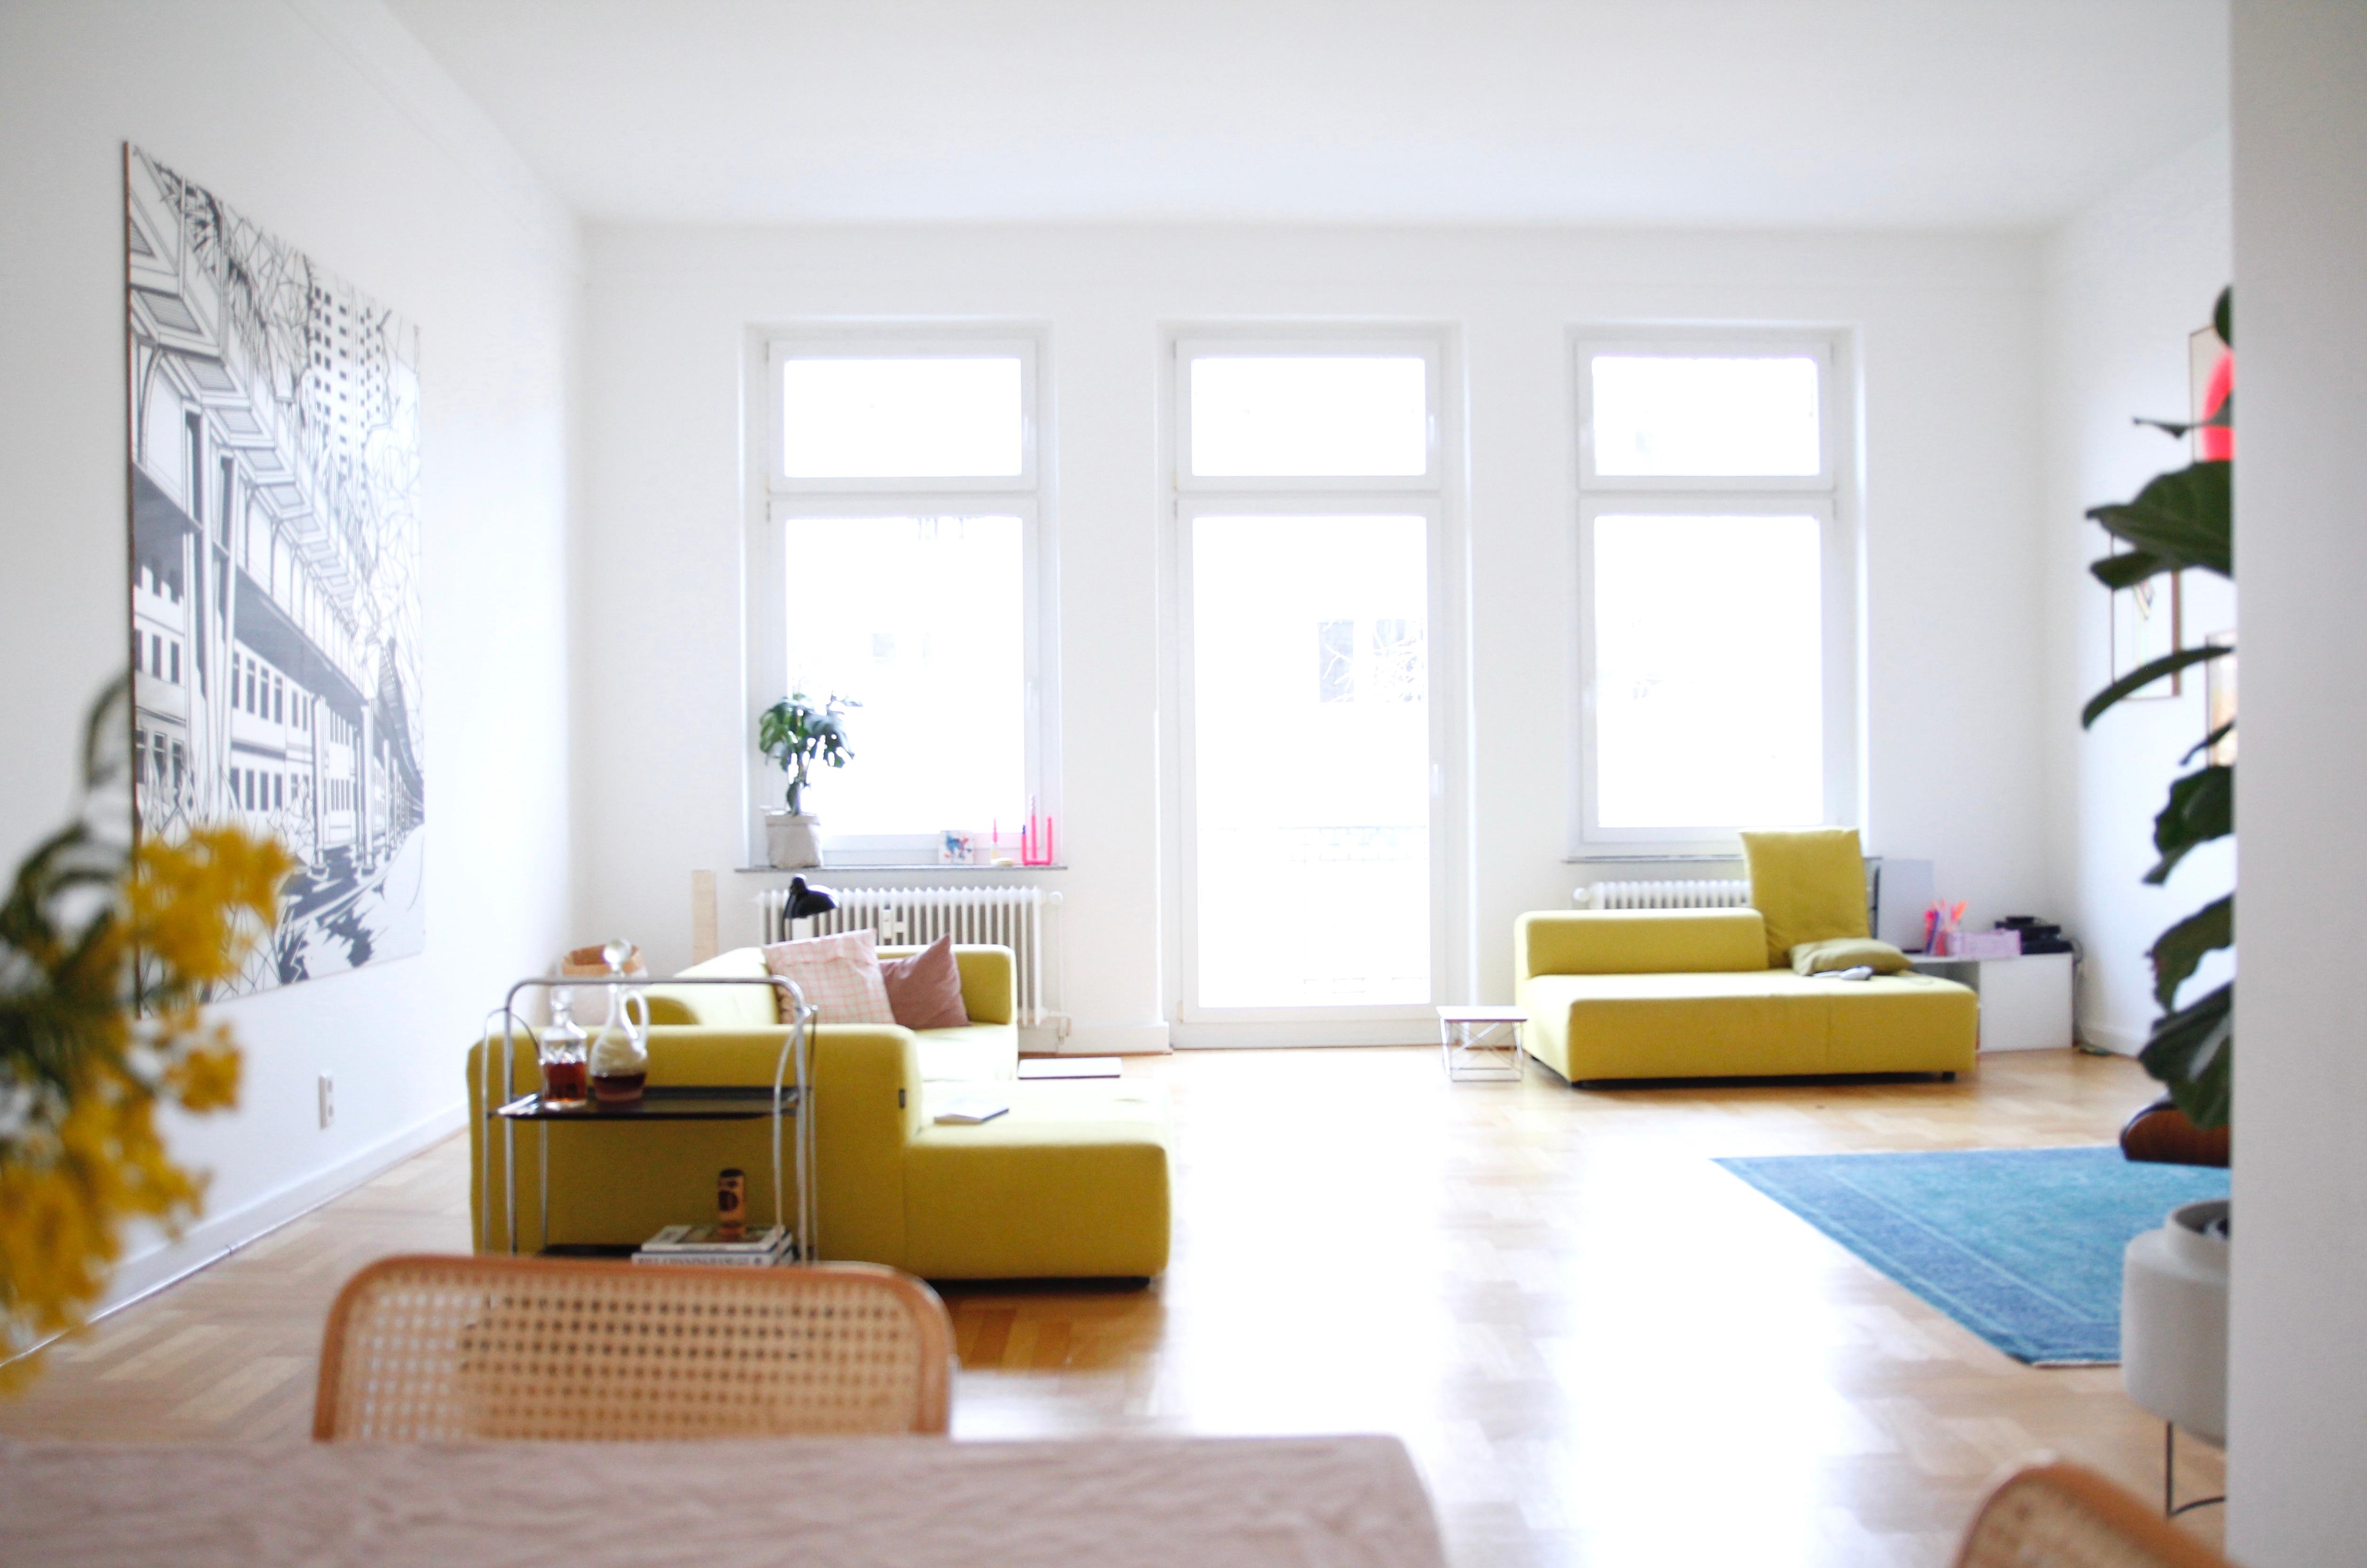 Weitschweifender Bilck ins Wohnzimmer. Mir bringt er gute Laune! #gelb #frühling #wohnzimmer #licht #color